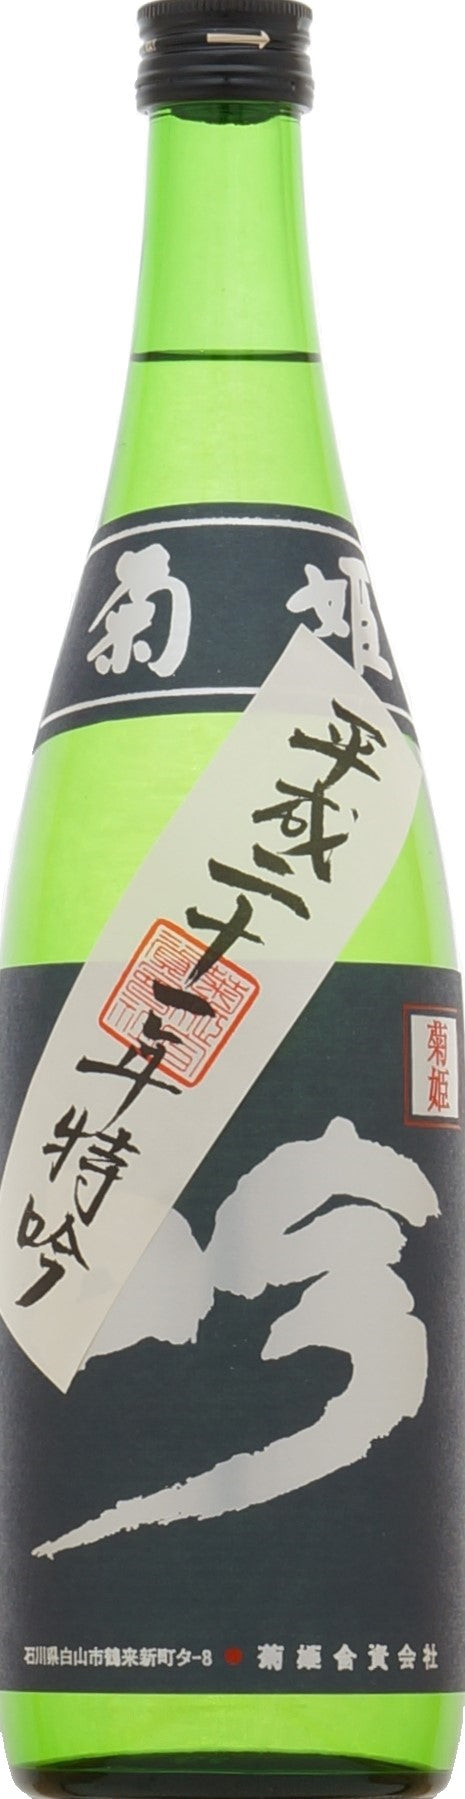 Kikuhime Toku Gin Heisei 21 (2009)